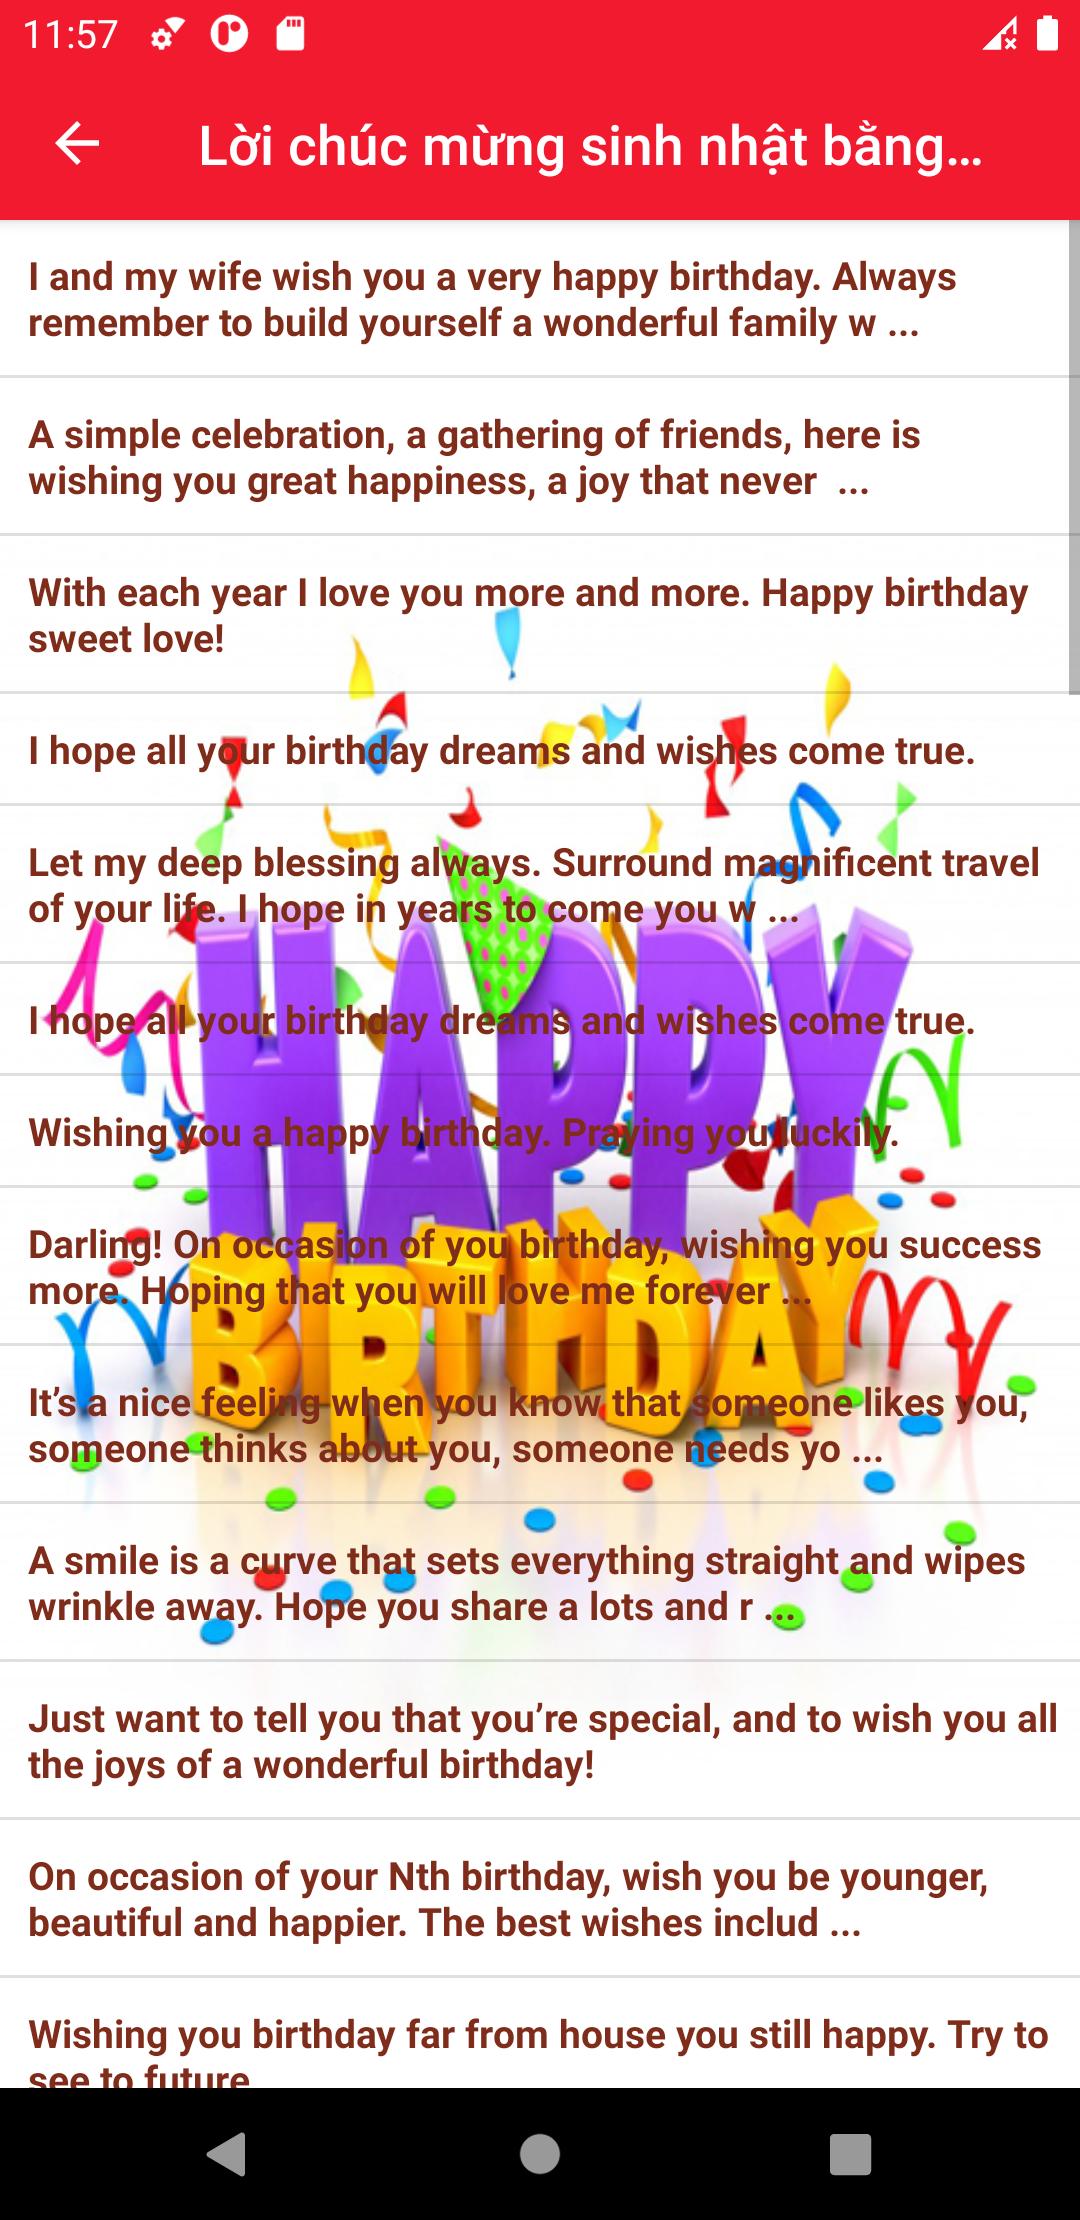 Lời chúc sinh nhật hay nhất - Birthday Wishes 10.22 Screenshot 24